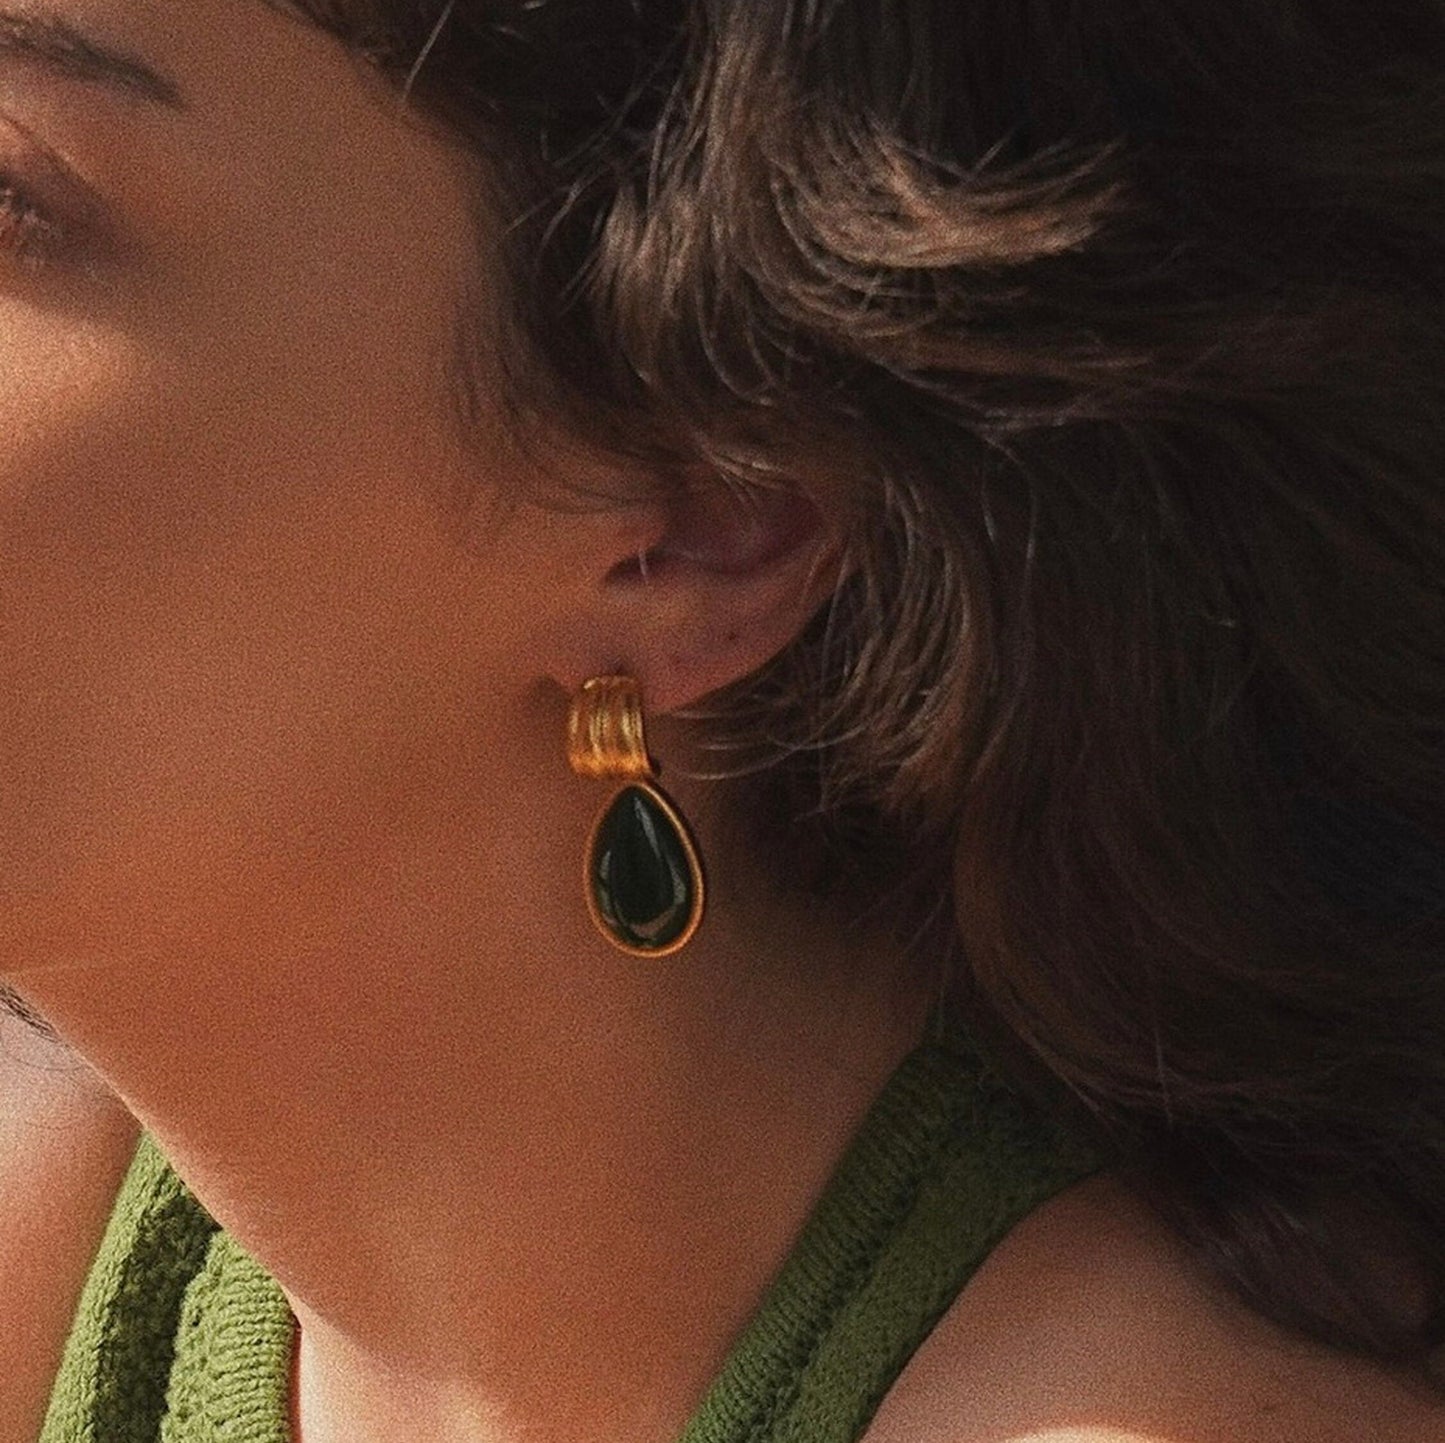 Emerald Teardrop Earrings, Emerald Green Earrings, Vintage Gold Earrings, Antique Style Earrings, 90s Retro Earrings, Wedding Jewelry Gifts